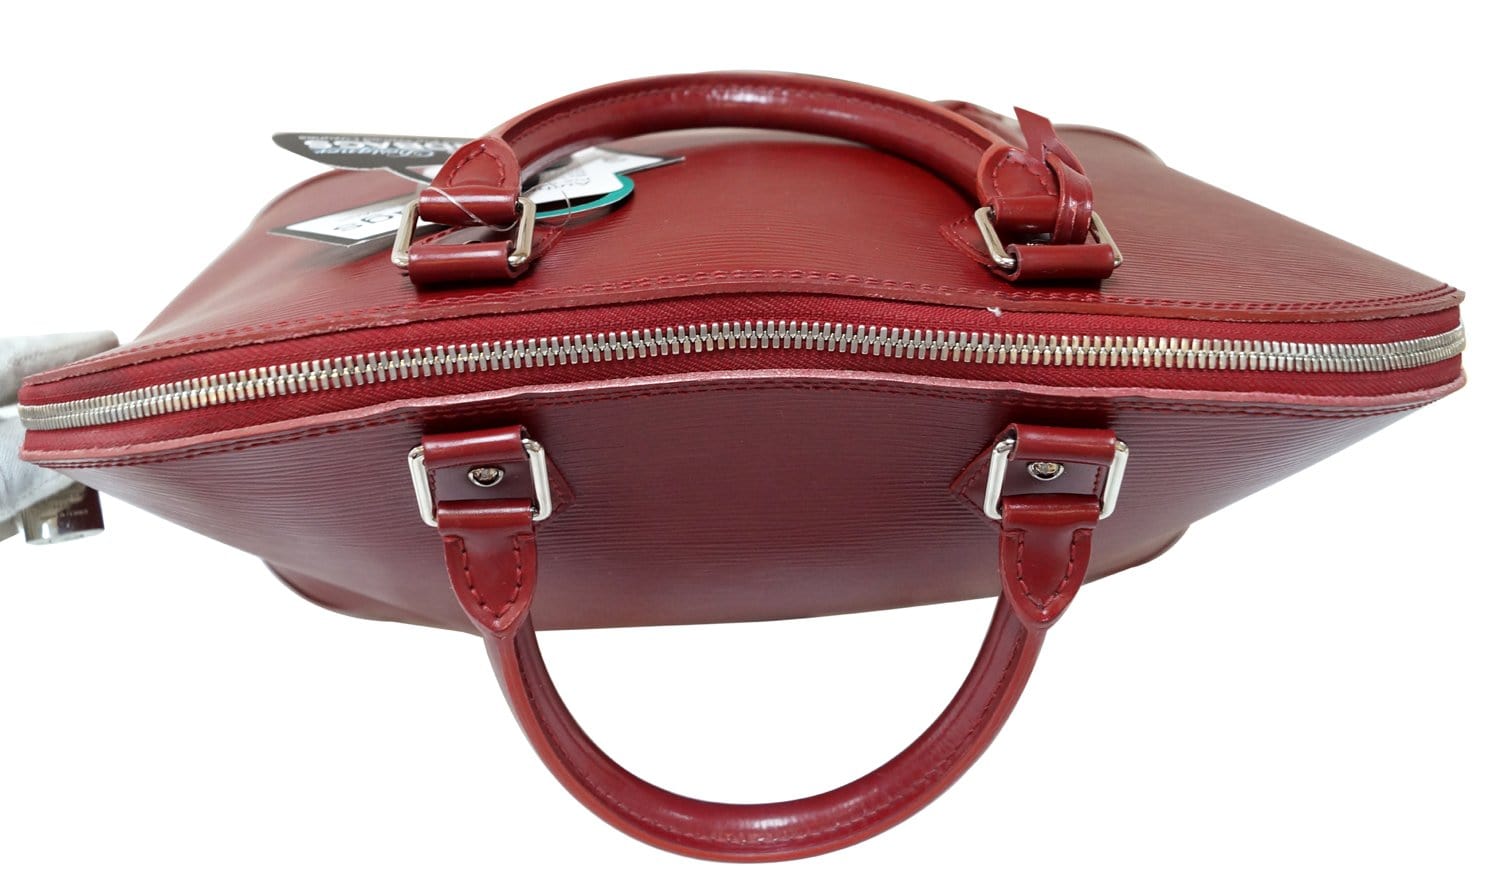 Louis Vuitton Fuchsia Epi Leather Alma Gm Bag